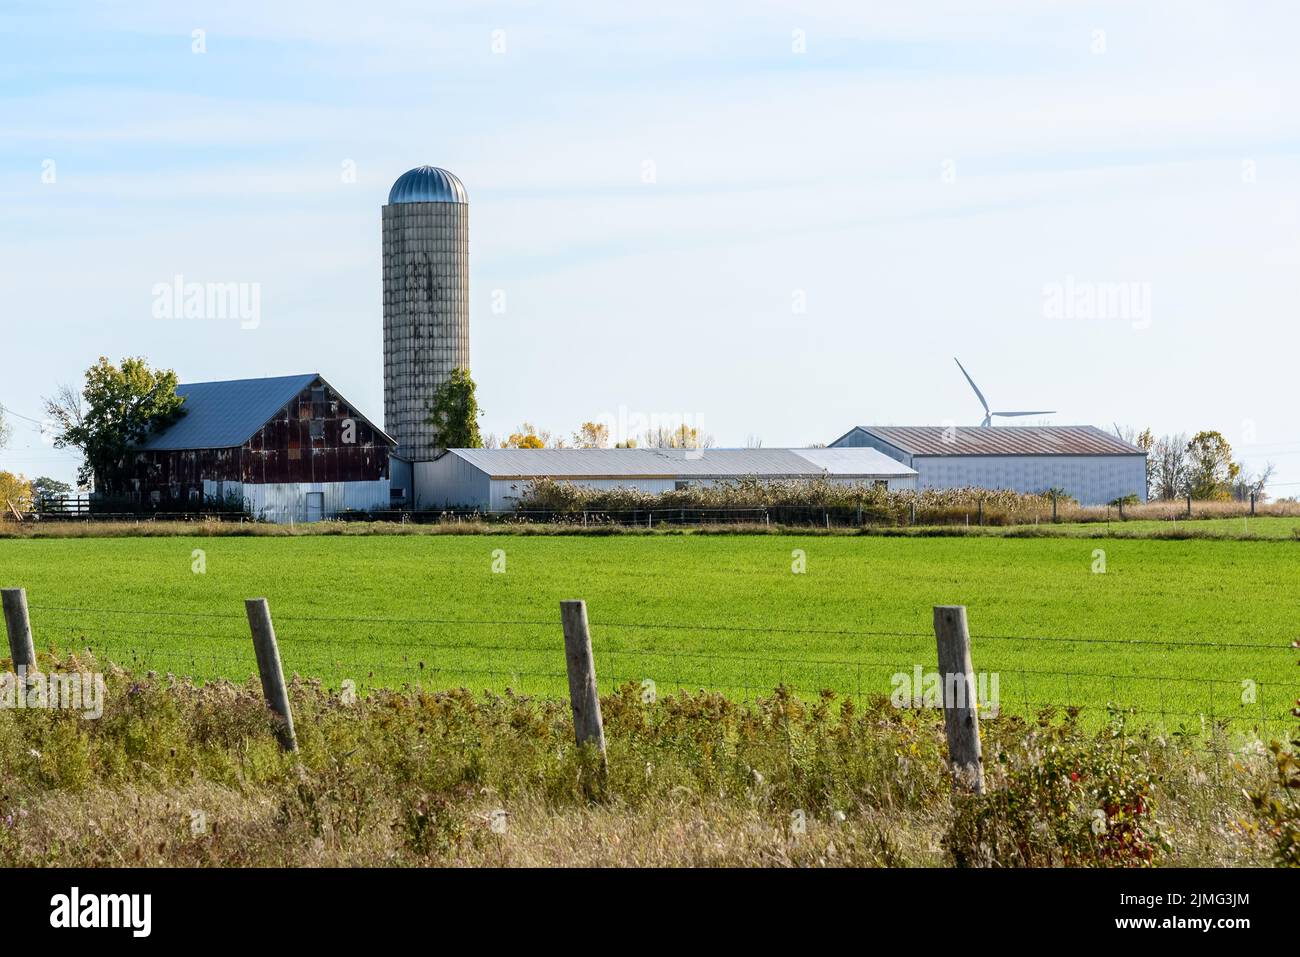 Antiguo granero de metal y silo en una granja en el extremo de un campo de hierba en un soleado día de otoño. Un aerogenerador es visible en el fondo. Foto de stock